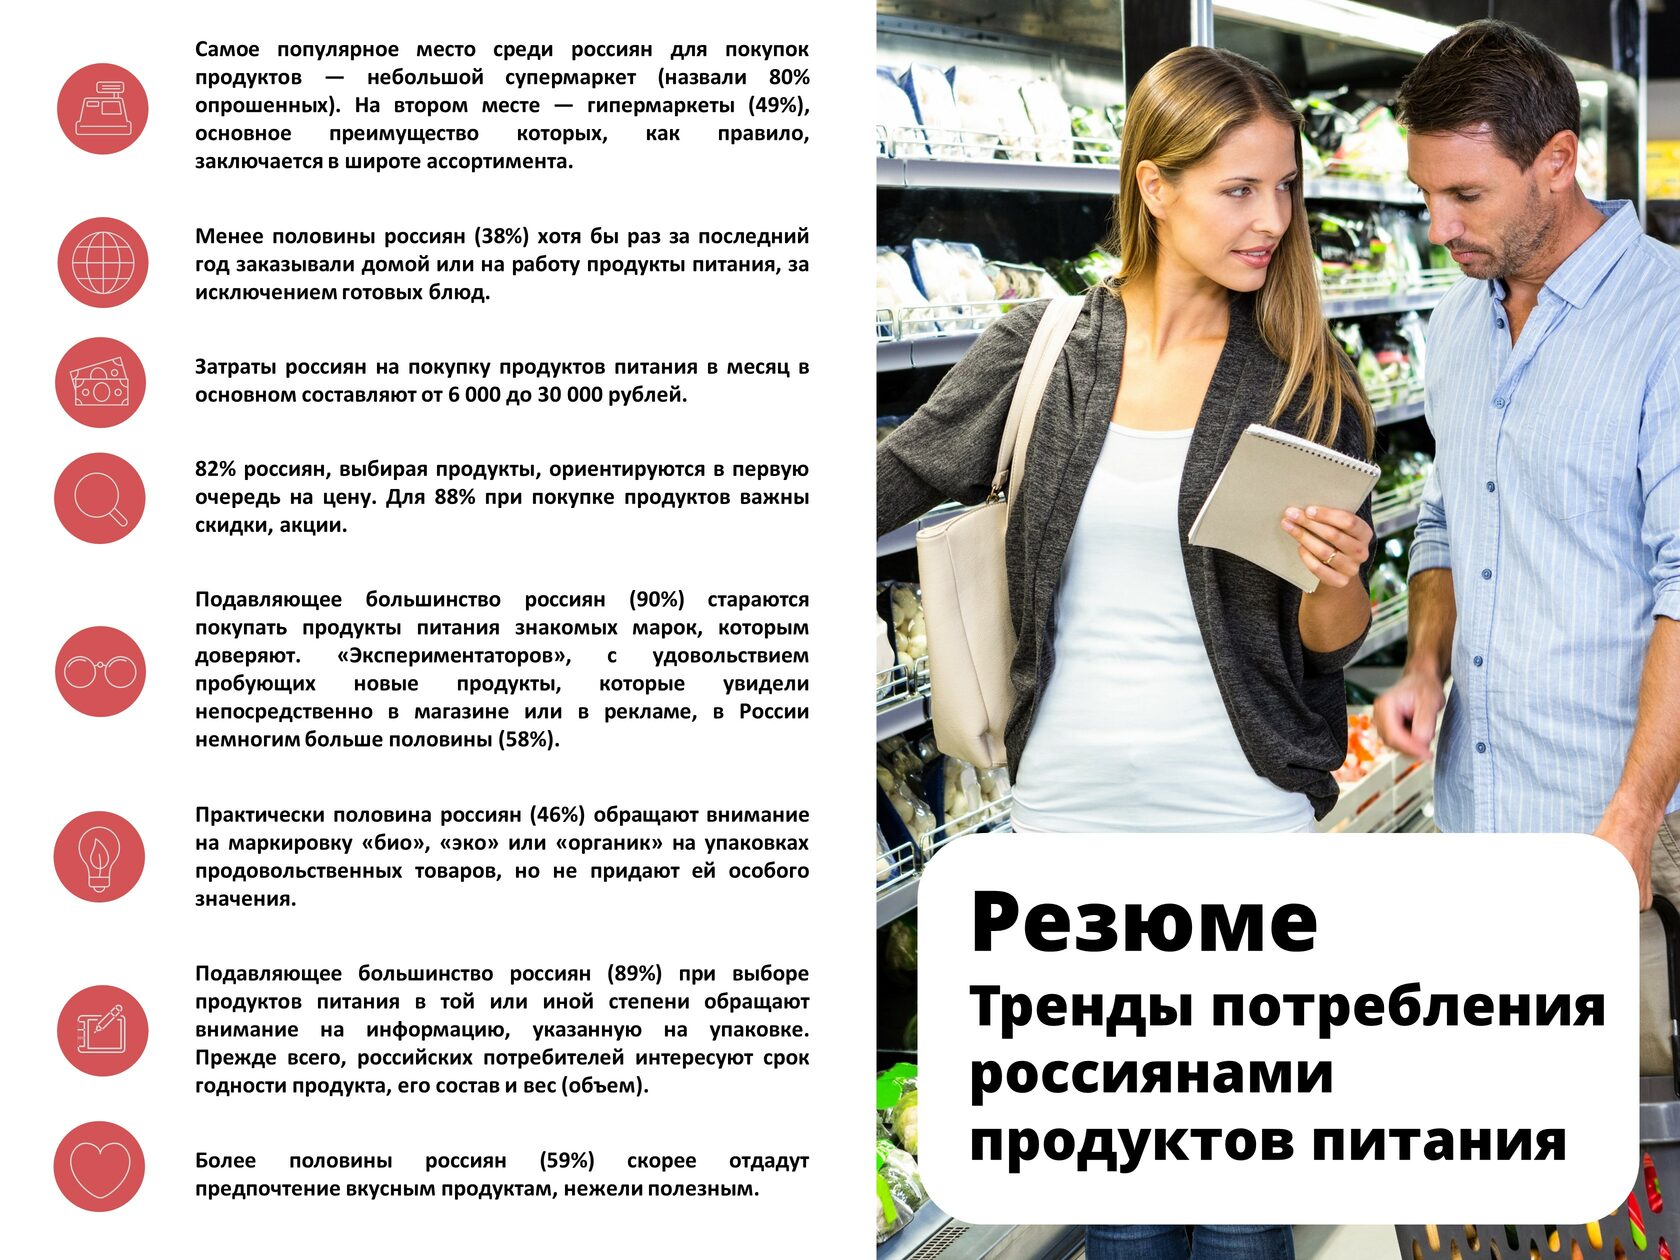 Тренды потребления россиянами продуктов питания